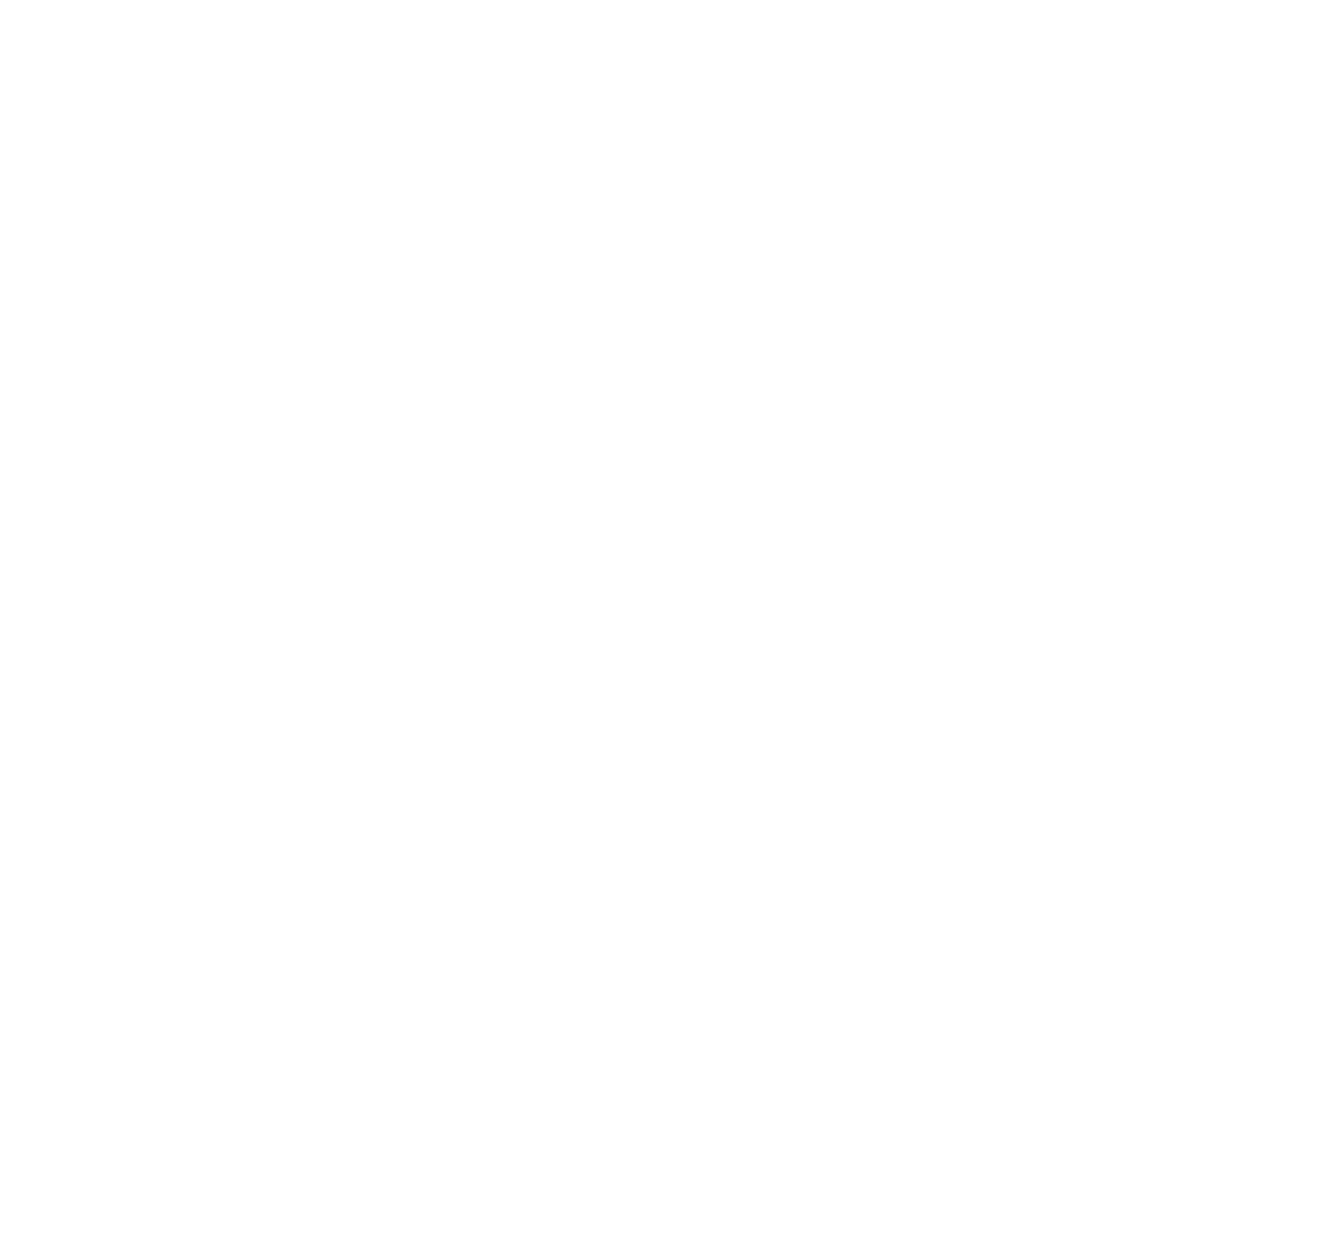 DEV batinbox